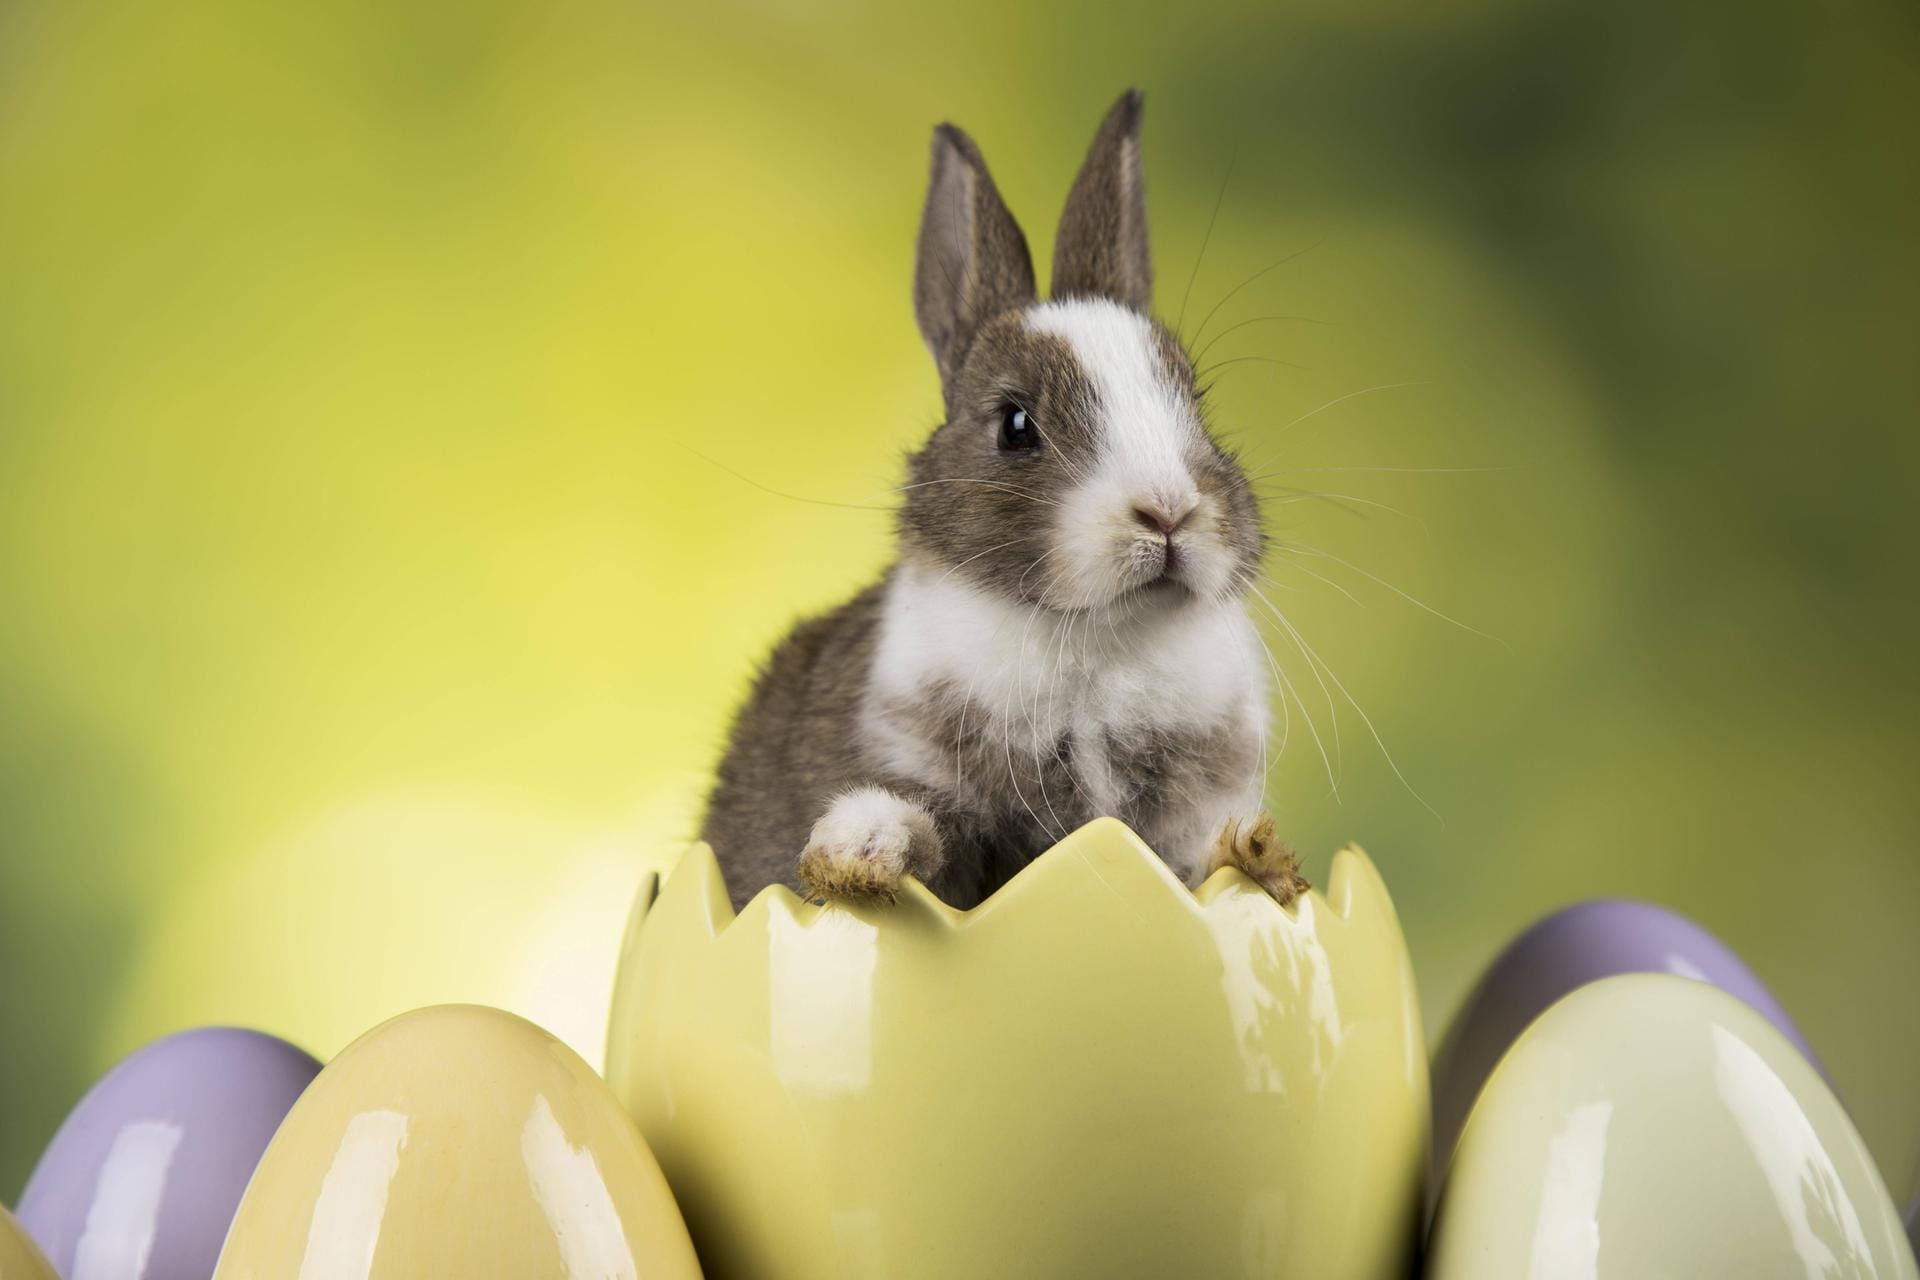 Der Osterhase ist wohl das bekannteste Ostersymbol. Kindern wird oft erzählt, dass er zu Ostern Eier bemalt und sie im Garten versteckt. Aufgrund seiner starken Vermehrung gilt der Hase als Symbol für Fruchtbarkeit. Ein genauer Ursprung des Osterhasen lässt sich aber nicht nachweisen.